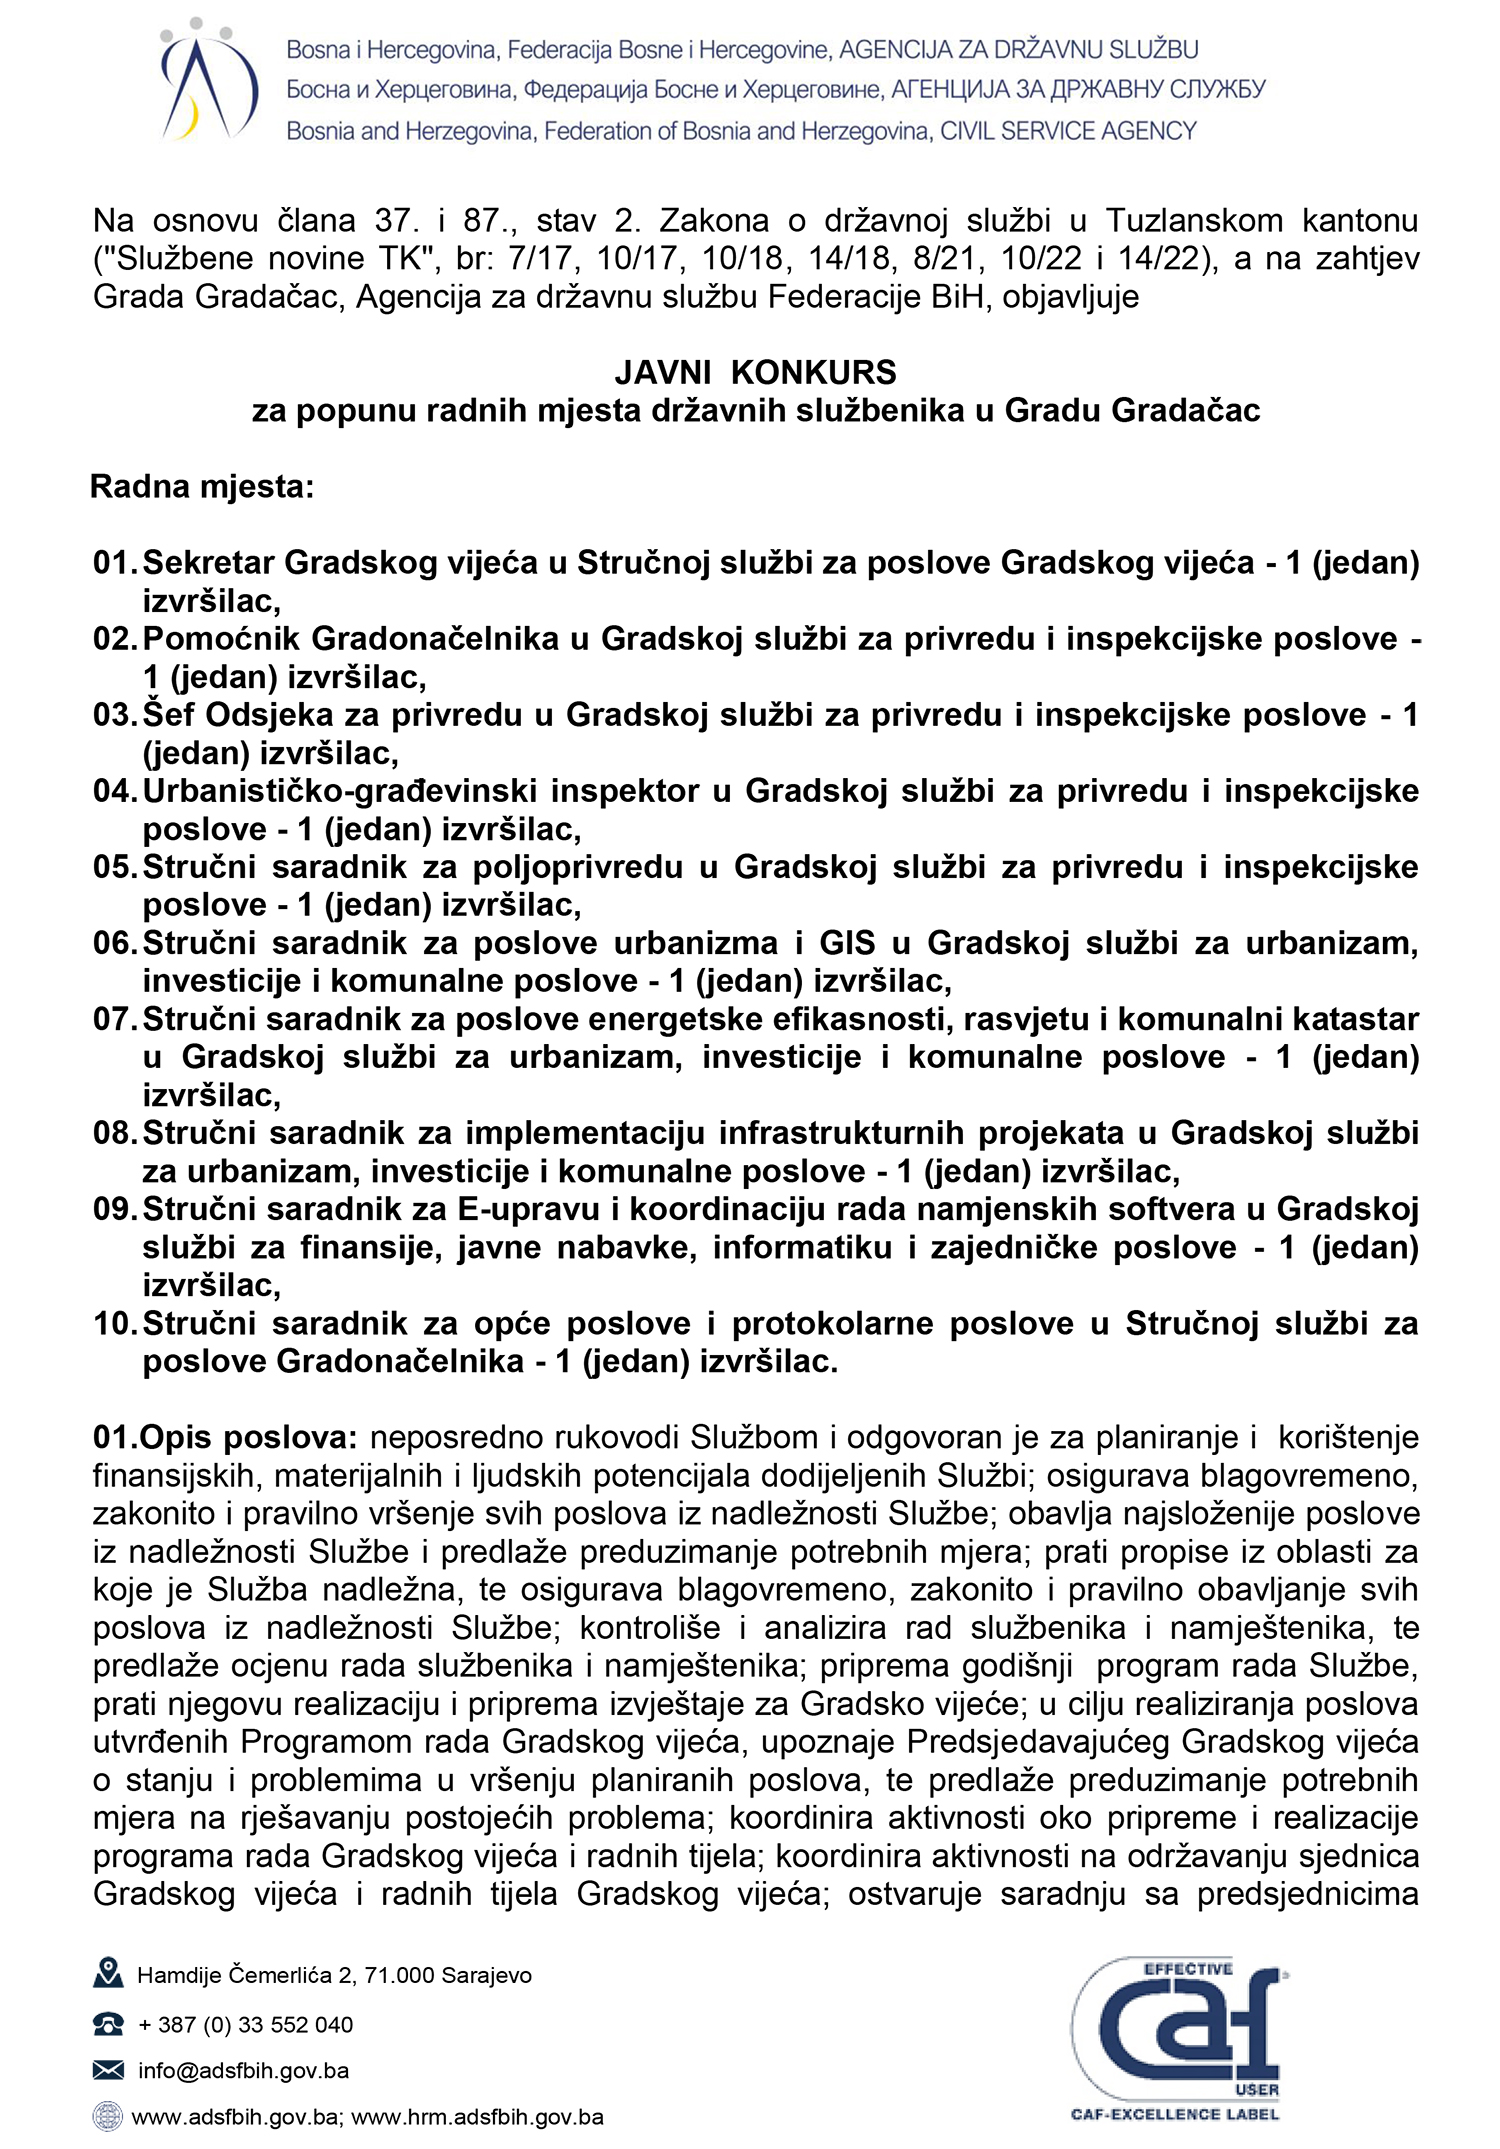 10 radnih mjesta: javni konkurs za popunu radnih mjesta državnih službenika u gradu gradačac